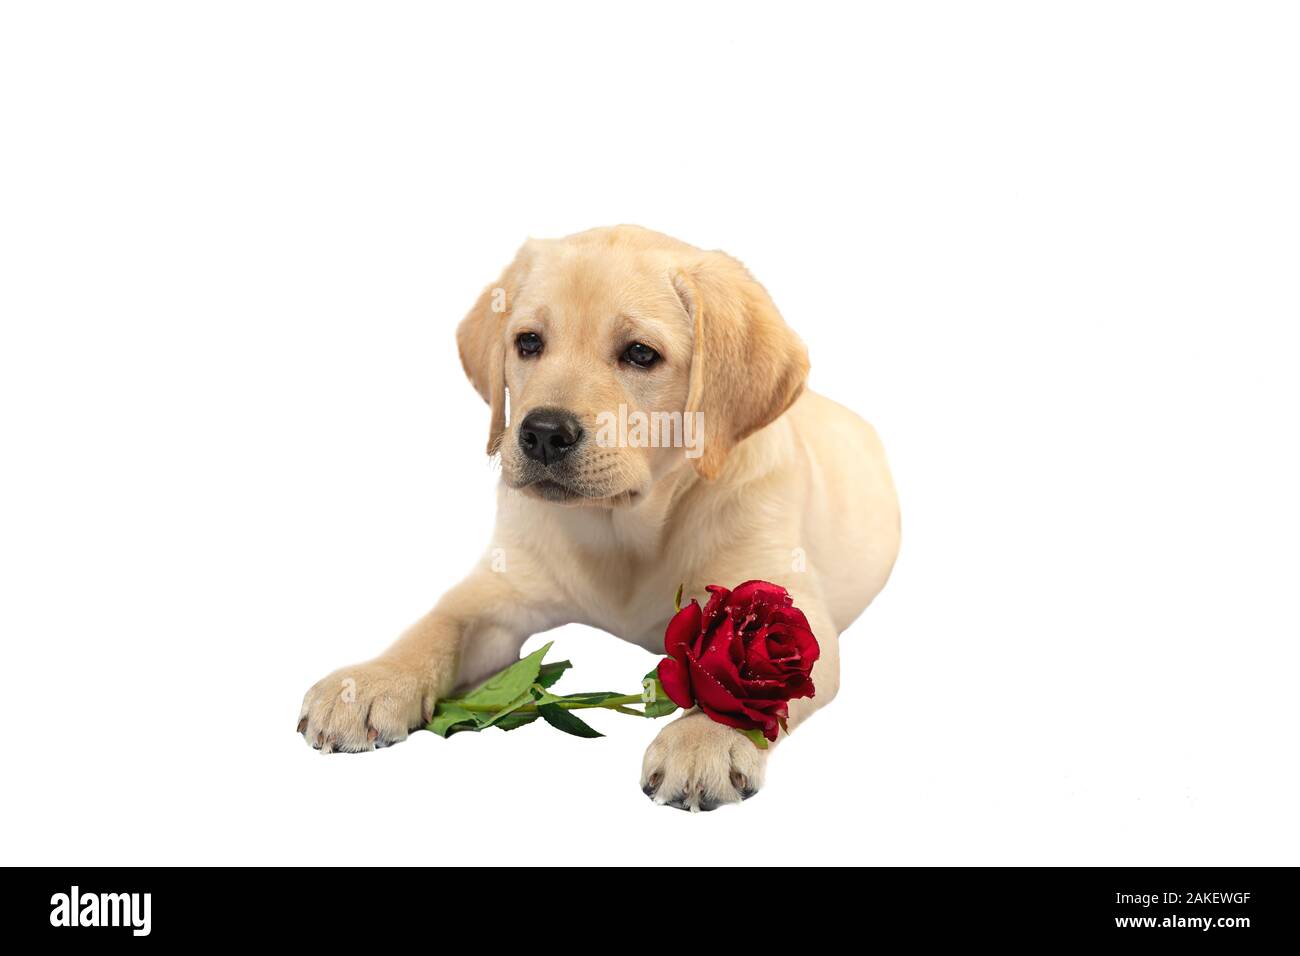 Süßer Hund hält eine rote Rose und erklärt seine Liebe jemand  Stockfotografie - Alamy